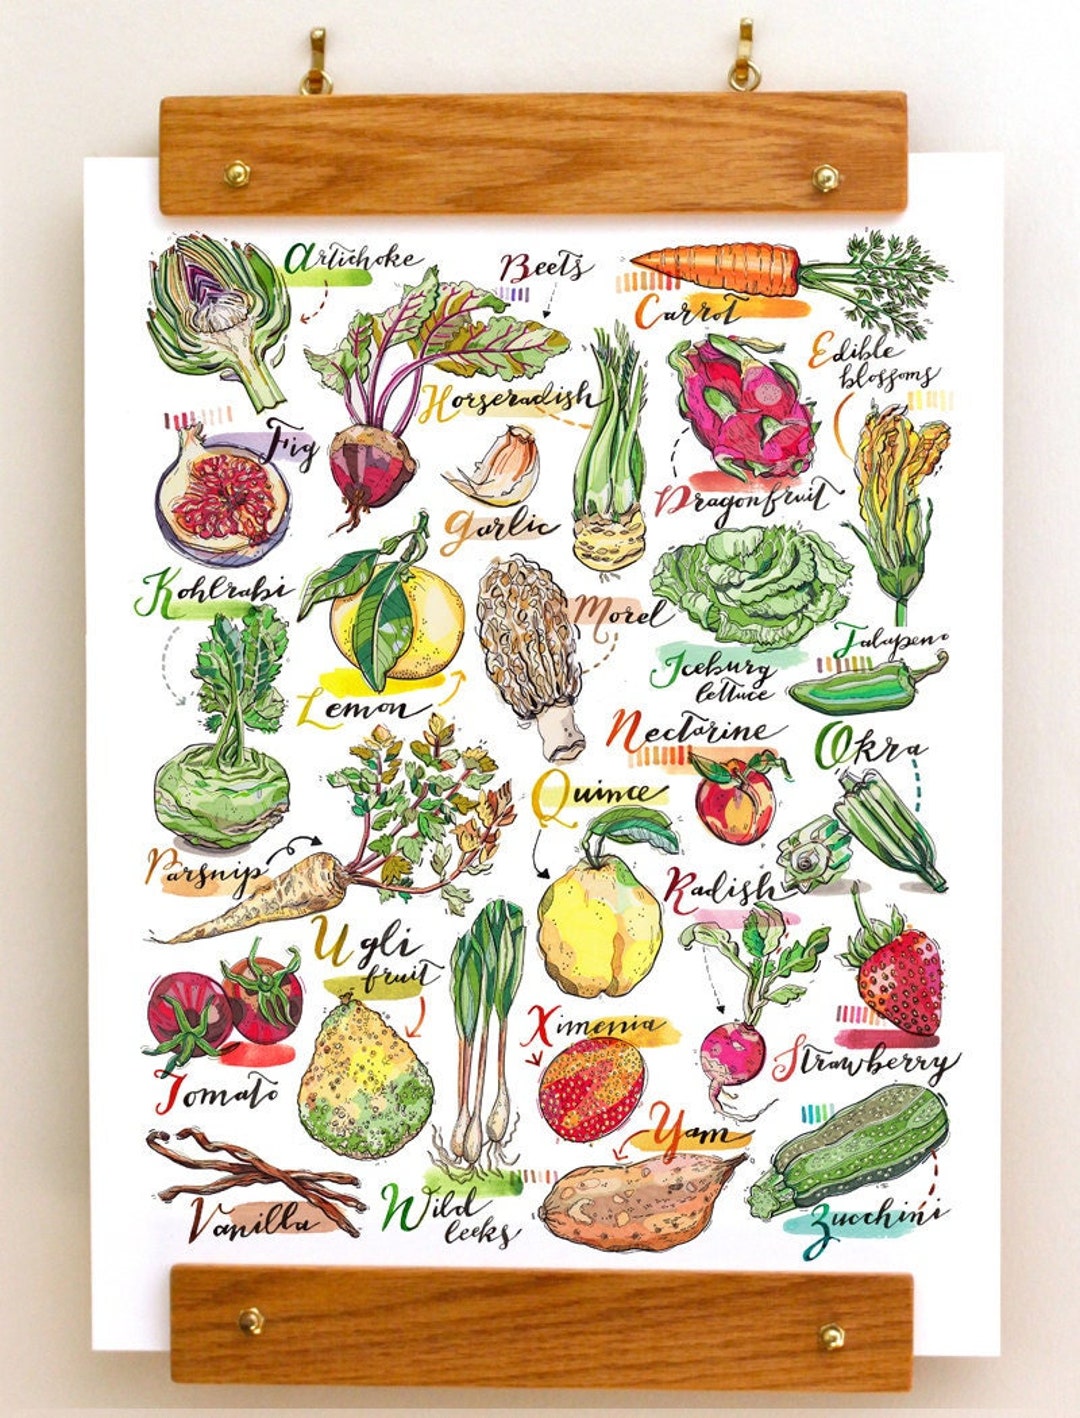 Liste de 50 Fruits avec noms et images - à imprimer